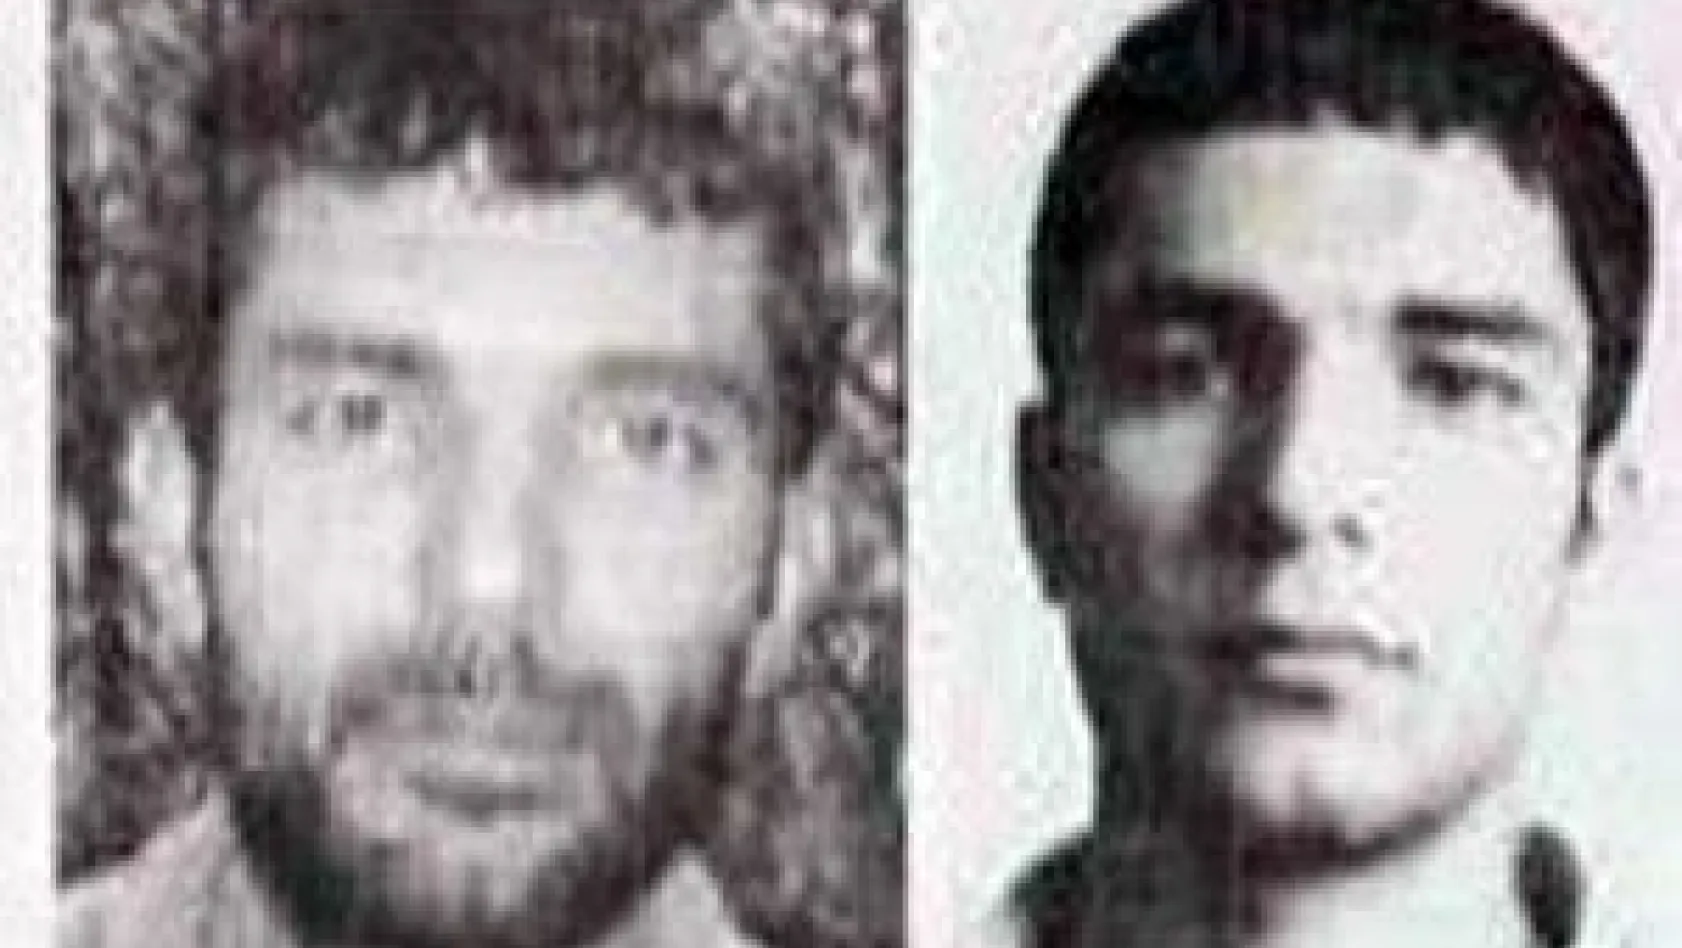 Öldürülen 2 terörist gri listede çıktı, başlarına 300'er bin lira ödül konulmuş
